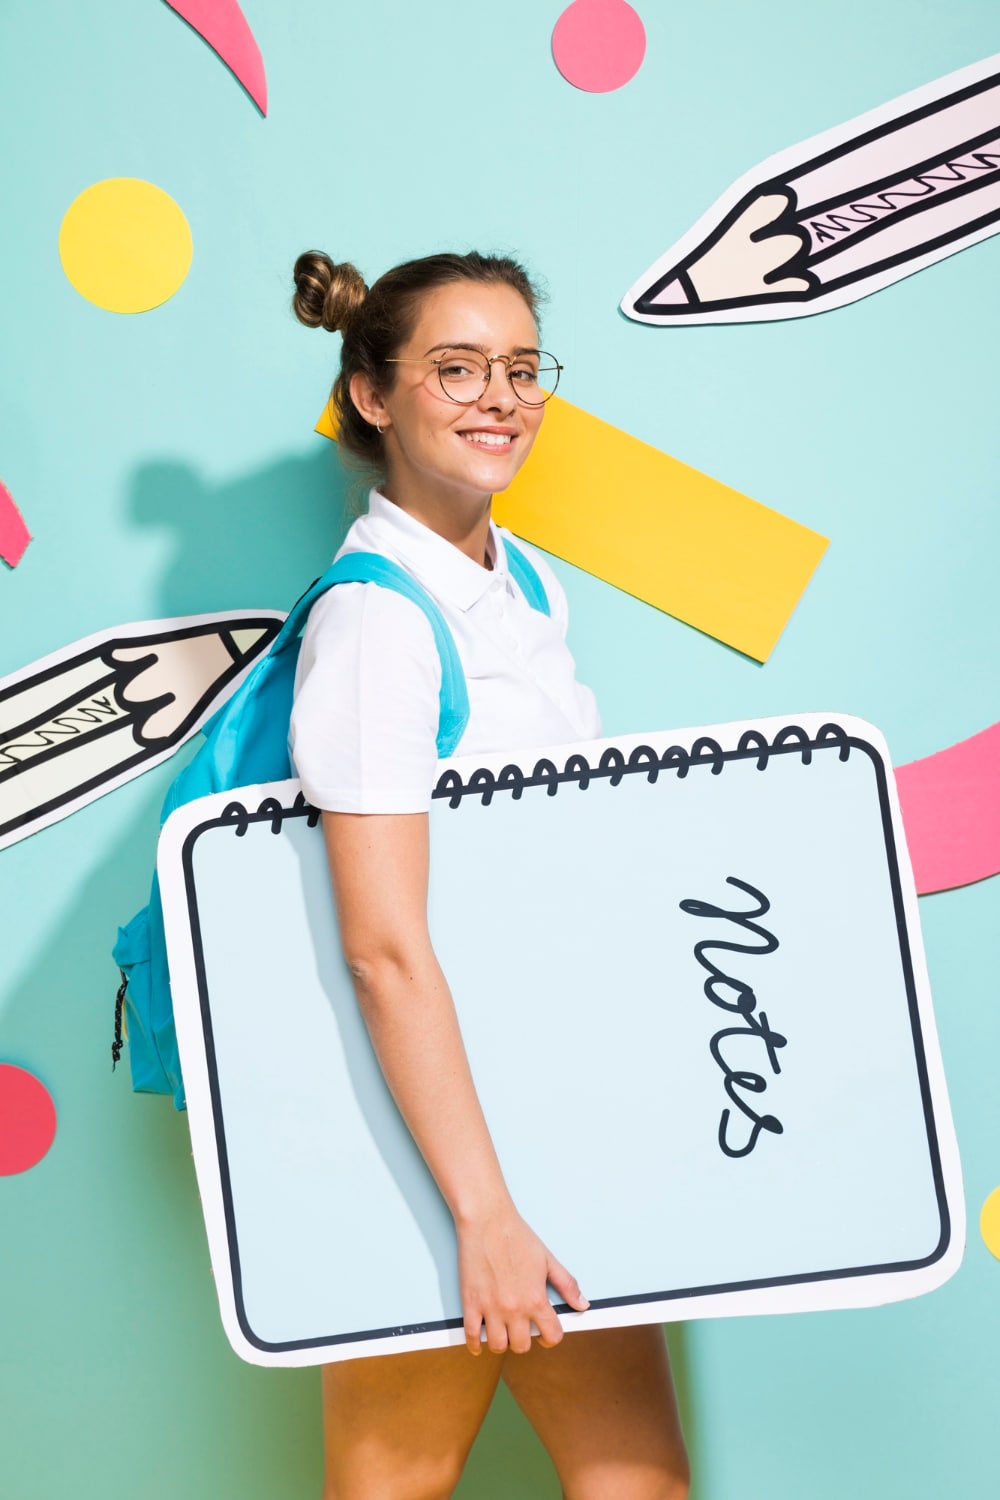 Une adolescente souriante qui va à l'école avec un grand cahier sous le bras